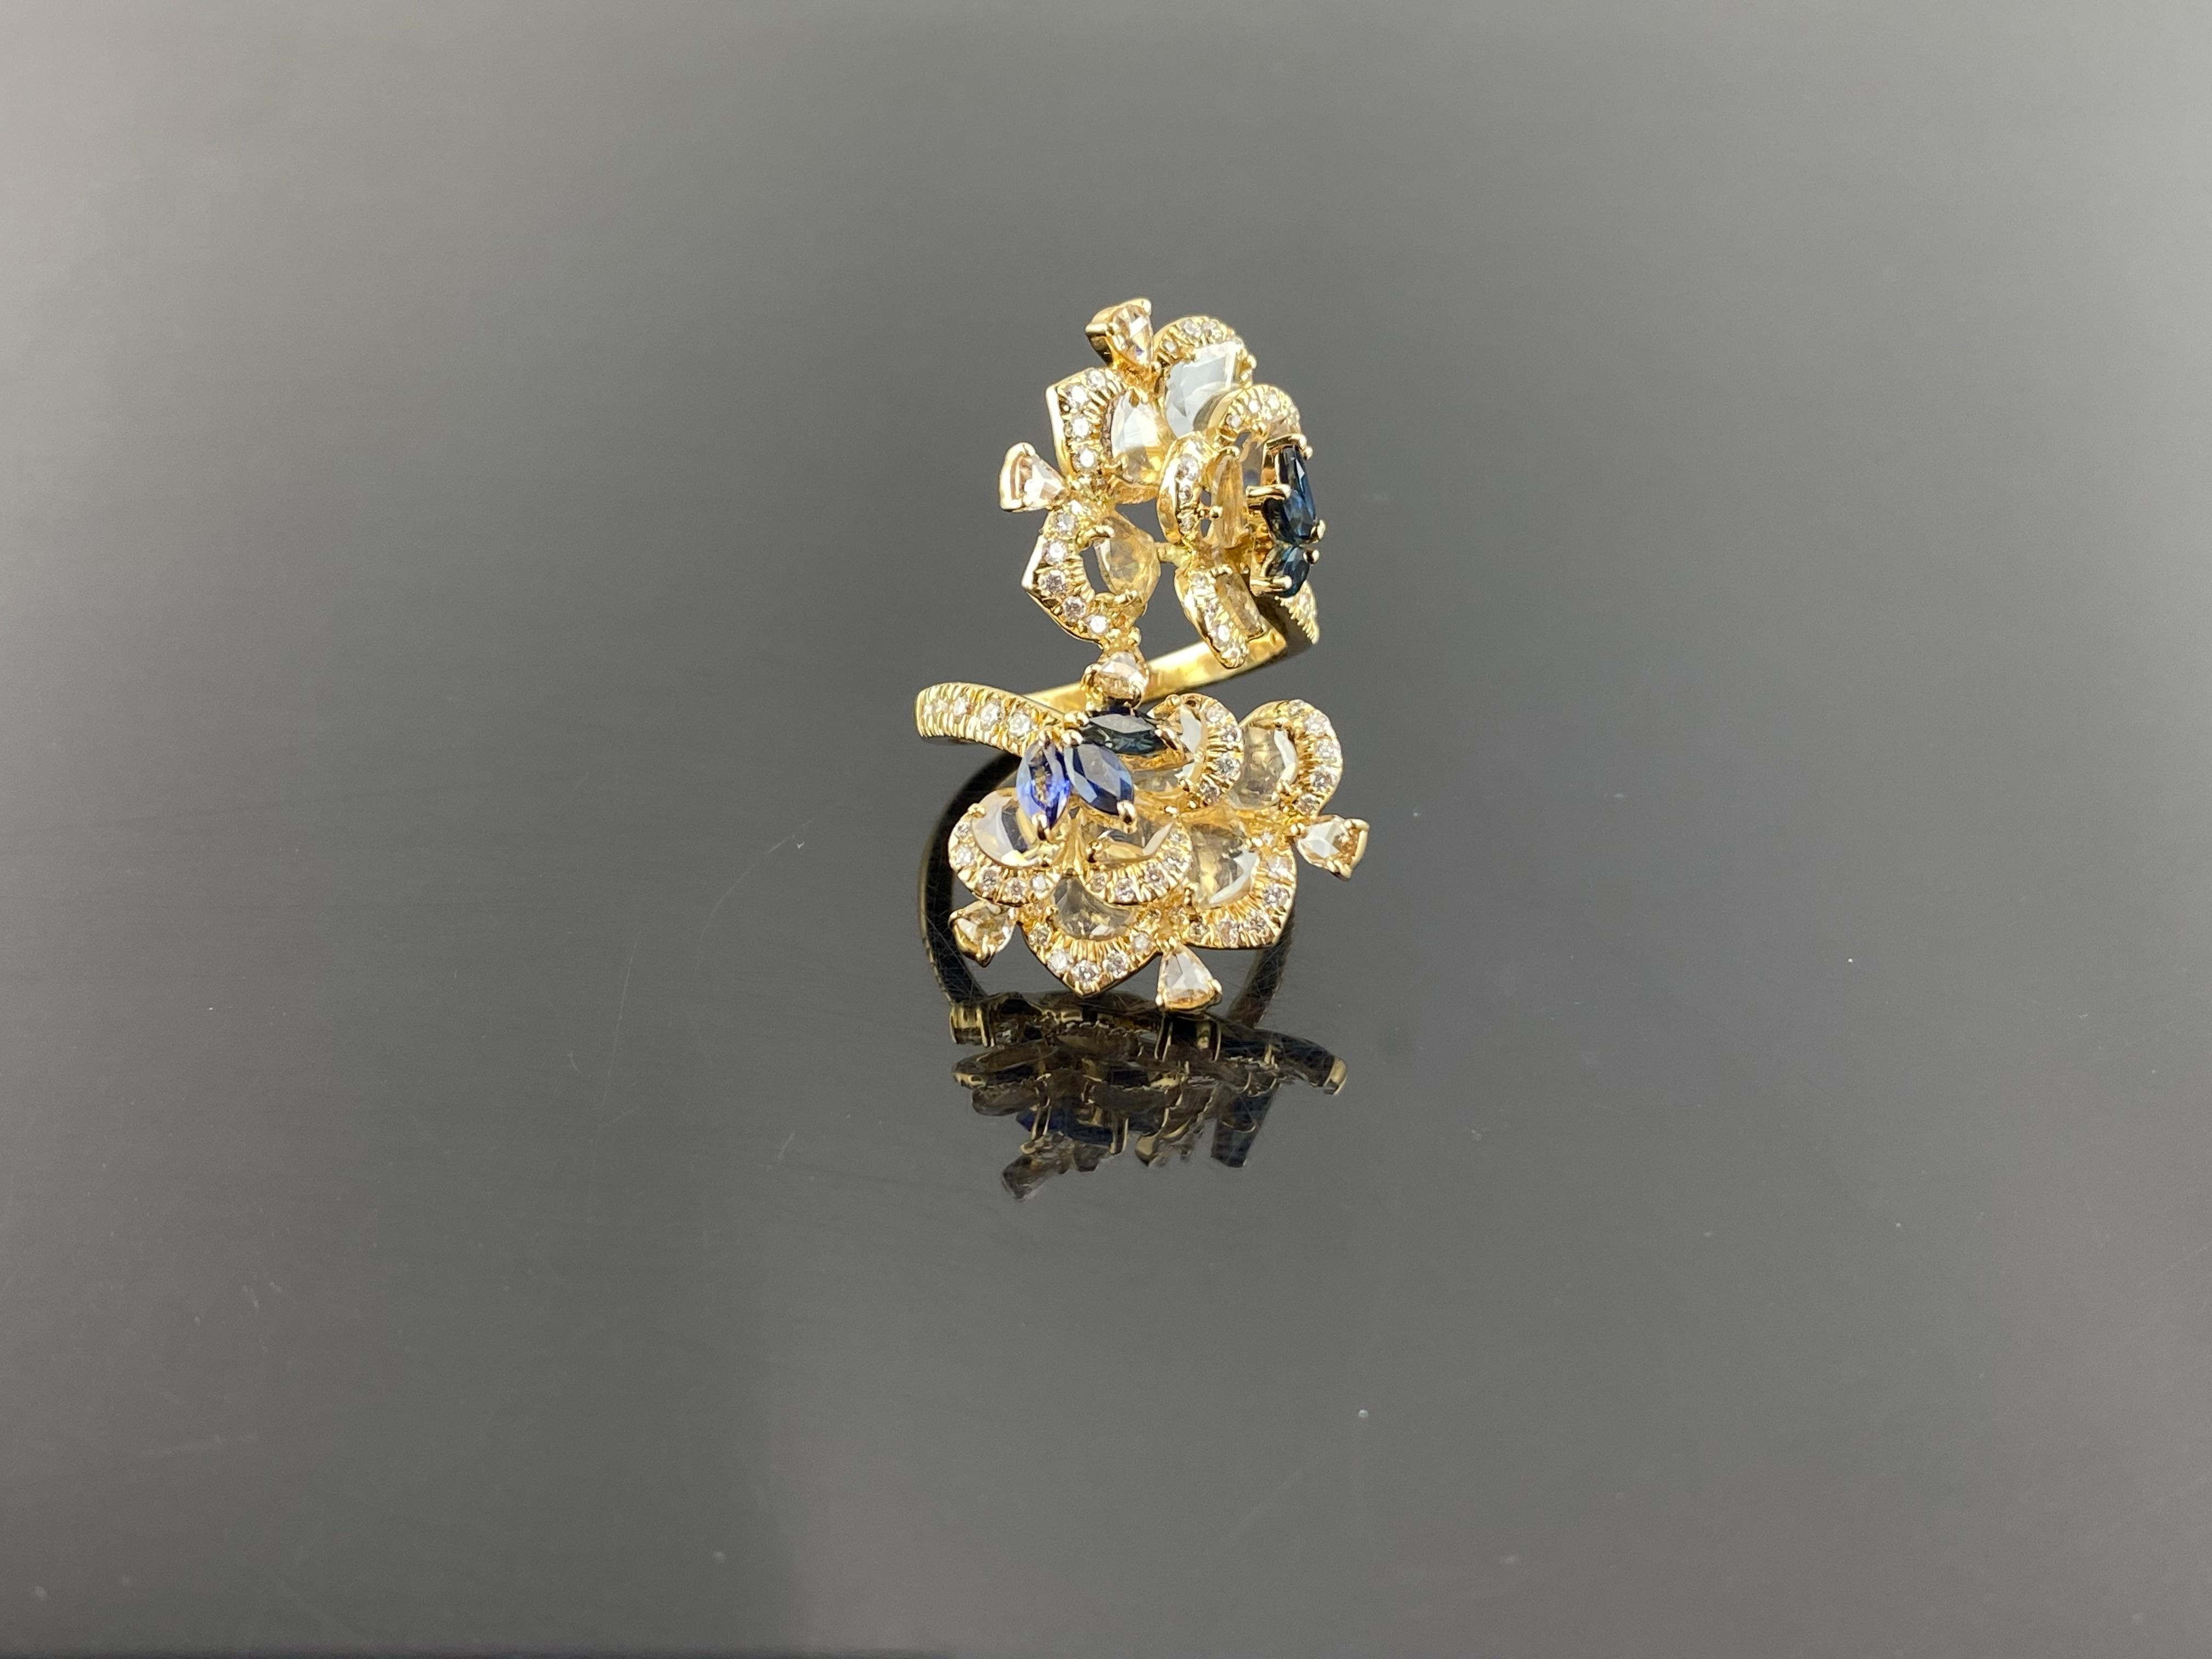 Ein wunderschön handgefertigter Ring mit 1,18 Karat blauem Saphir und 2,39 Karat Diamant im Rosenschliff, gefasst in massivem 18-karätigem Gelbgold. Derzeit Größe US 6.5, kann in der Größe geändert werden. 
Für weitere Informationen können Sie uns